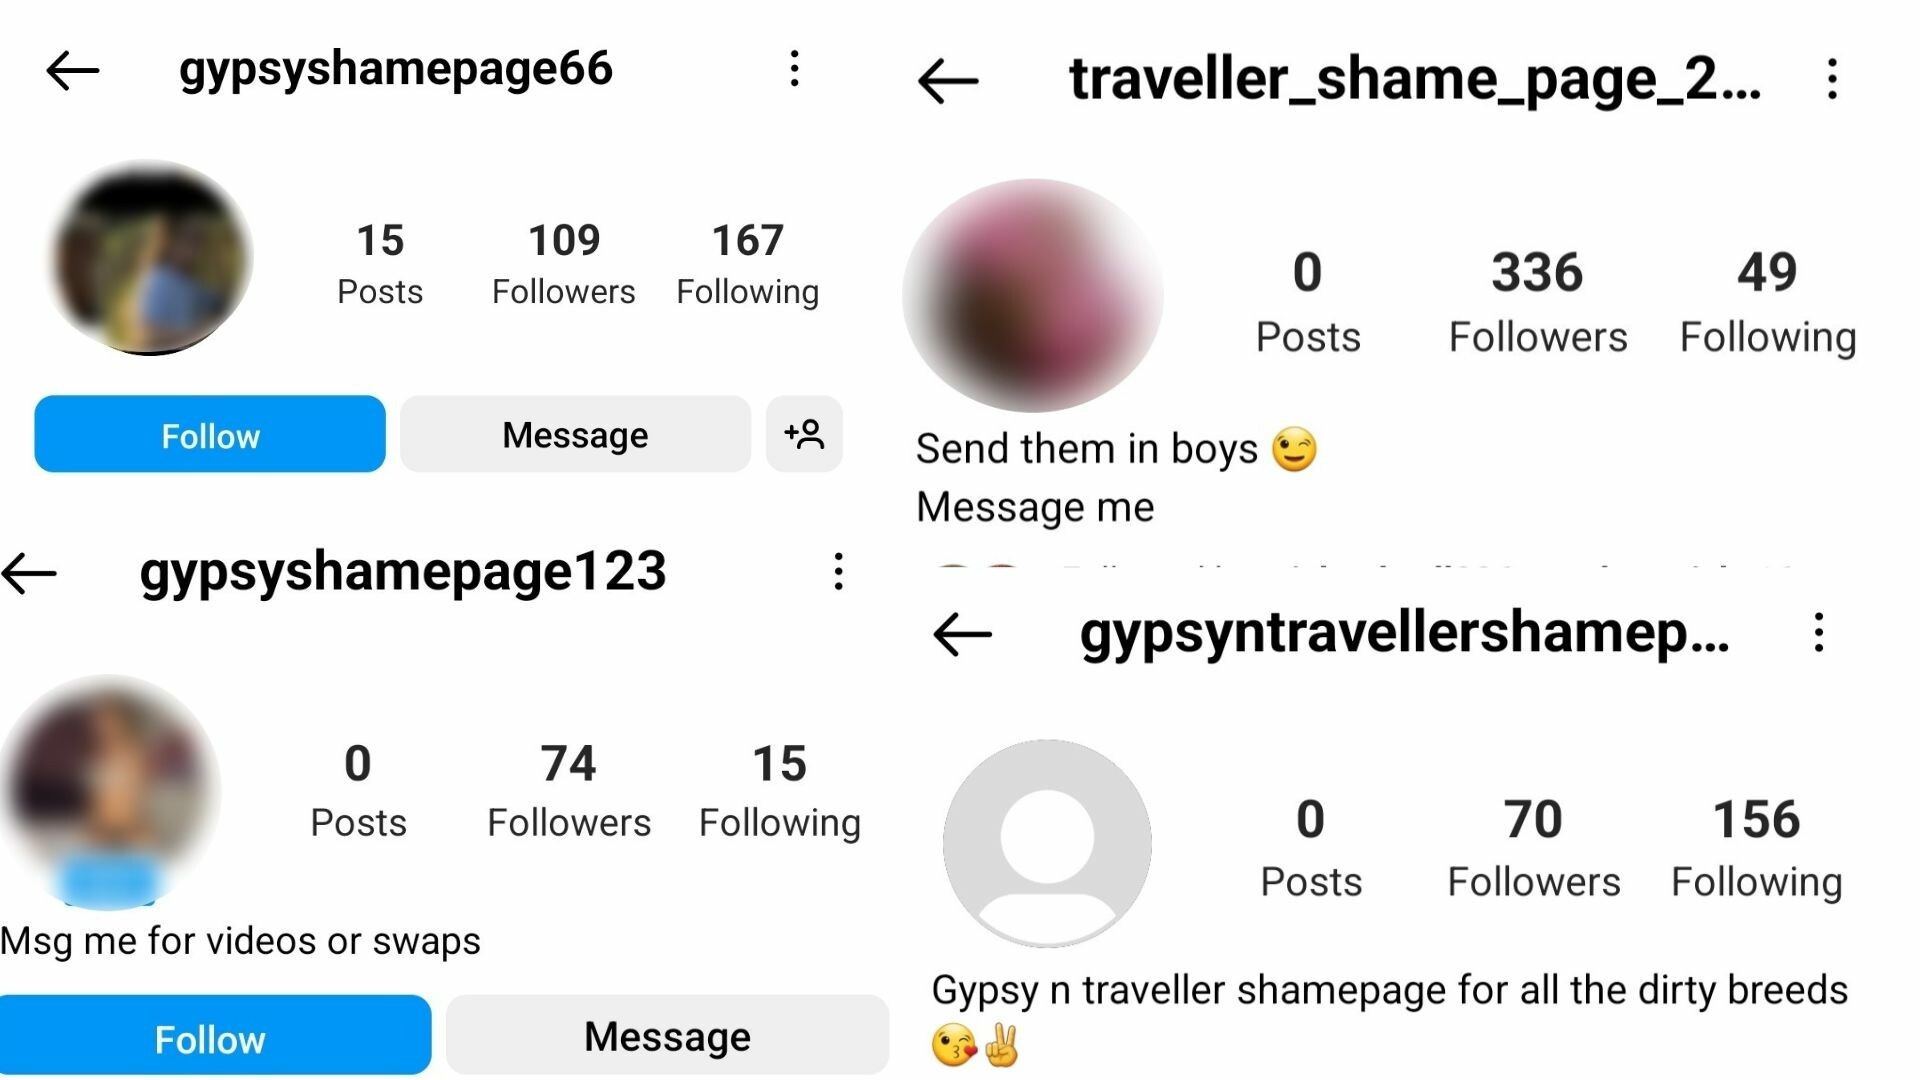 traveller shame page